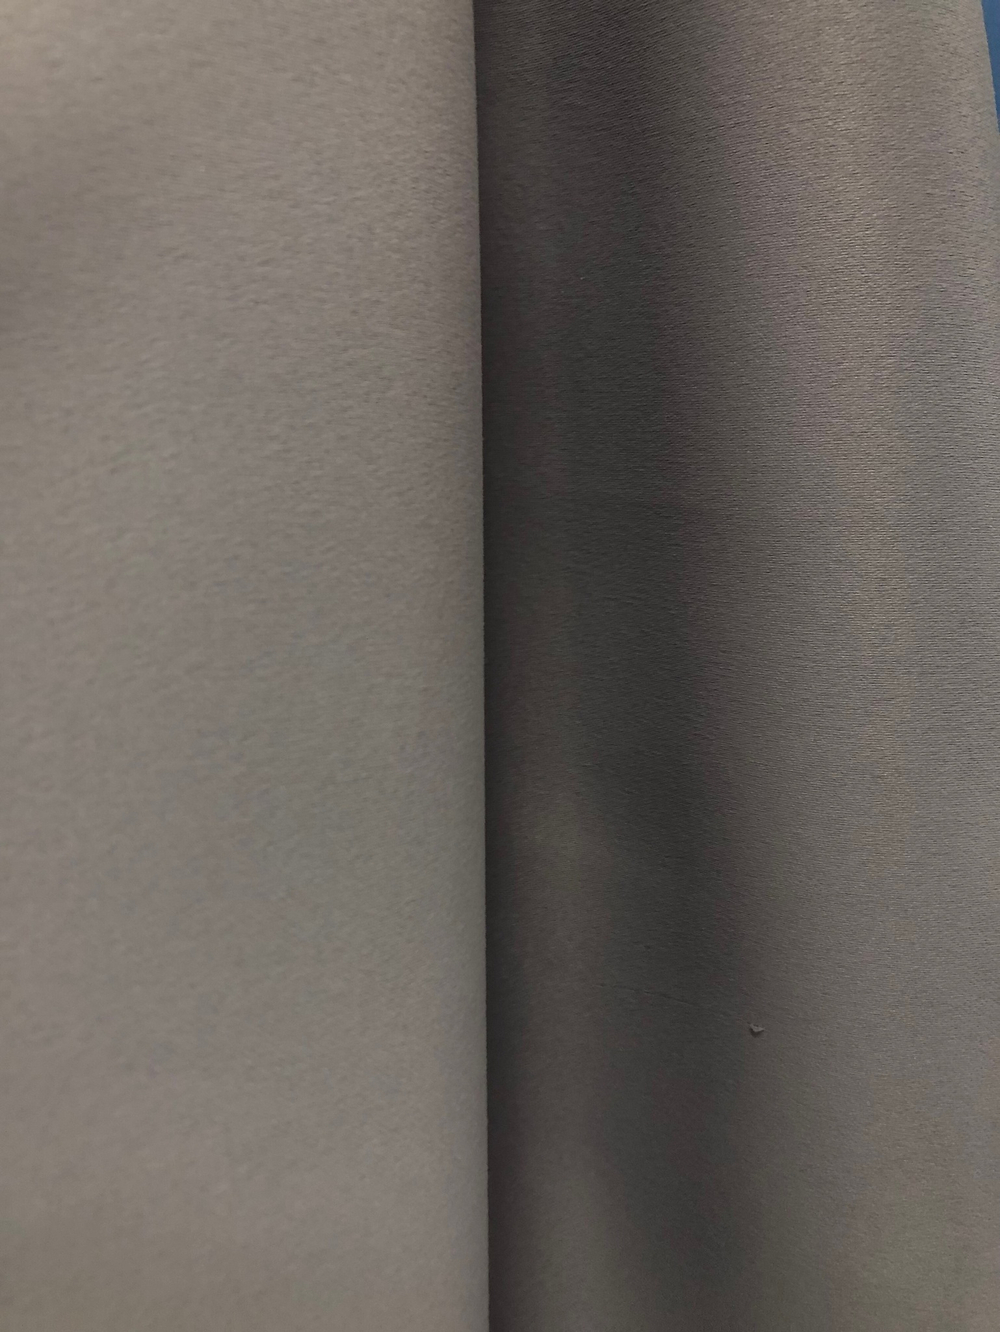 Ткань портьерная блэкаут, матовый, цвет тауповый светлый, артикул 327617